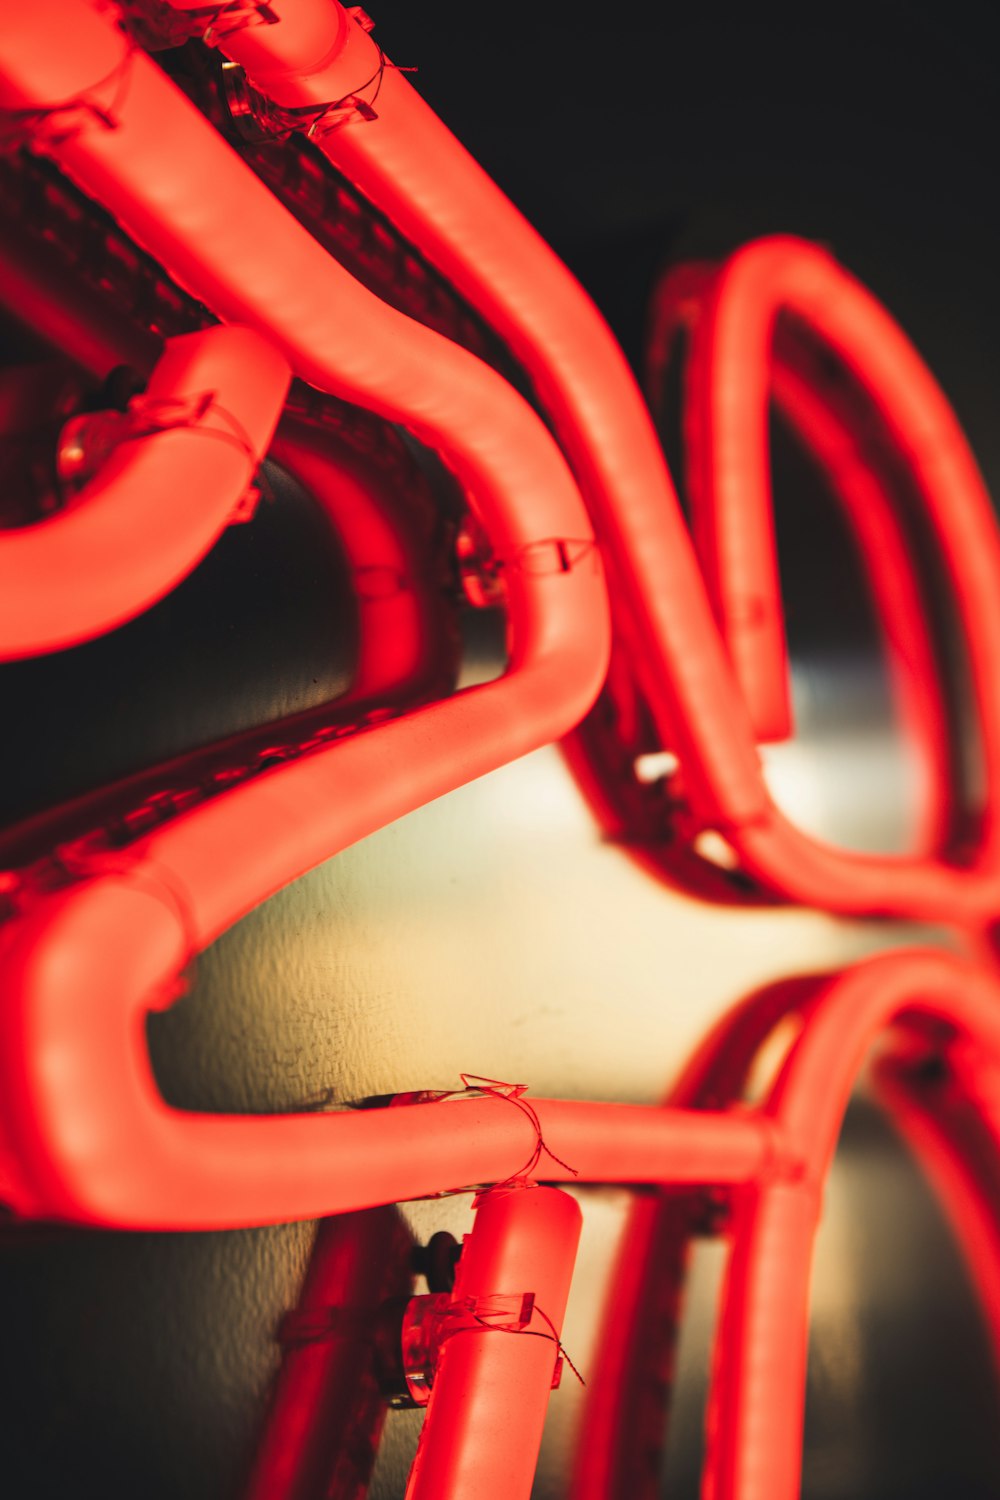 a close-up of a red machine